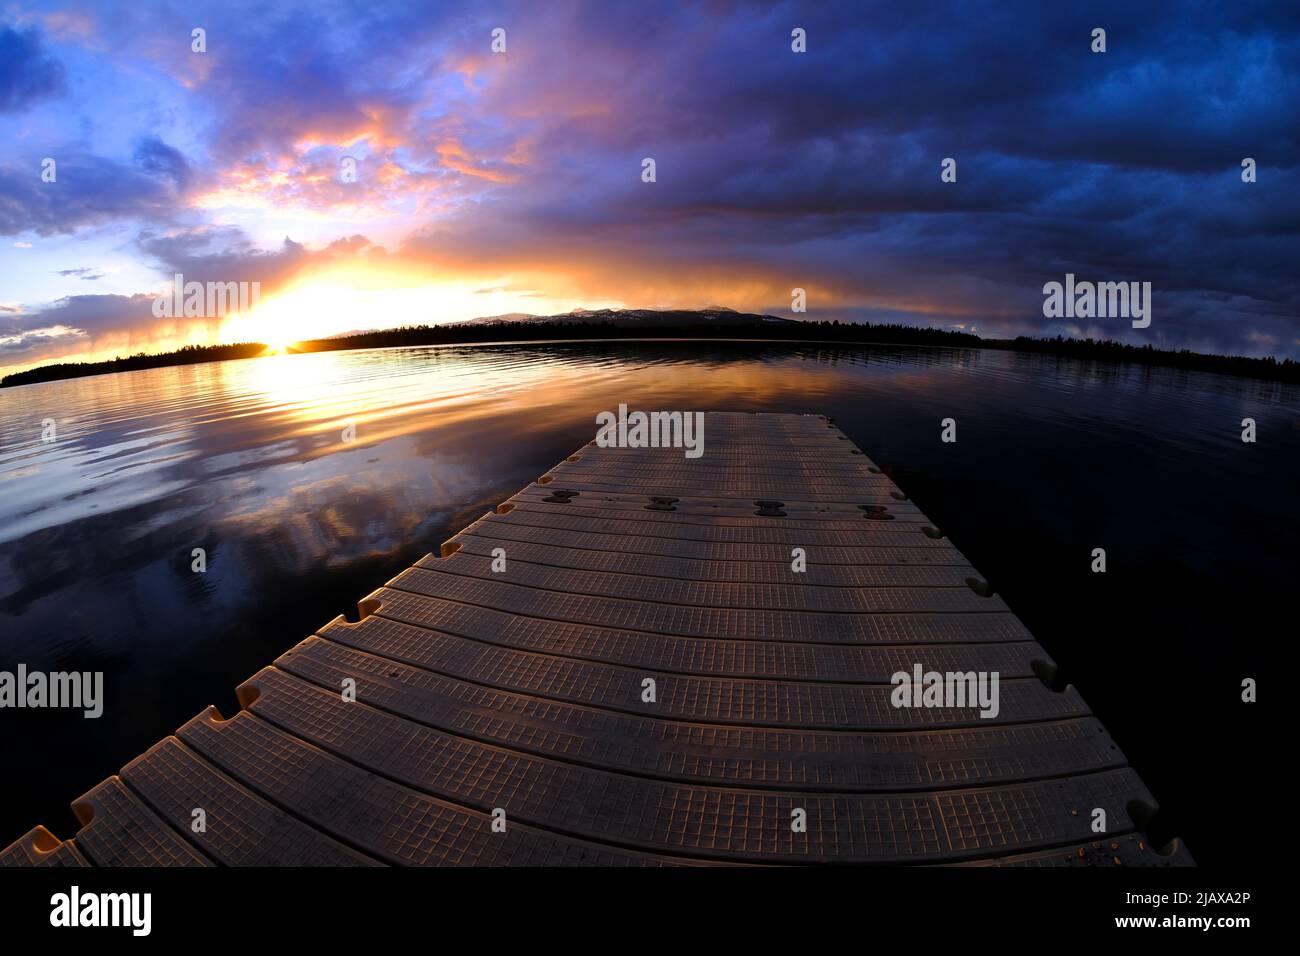 Lago al atardecer o al amanecer con nubes y reflejos del cielo que reflejan los colores del agua Foto de stock